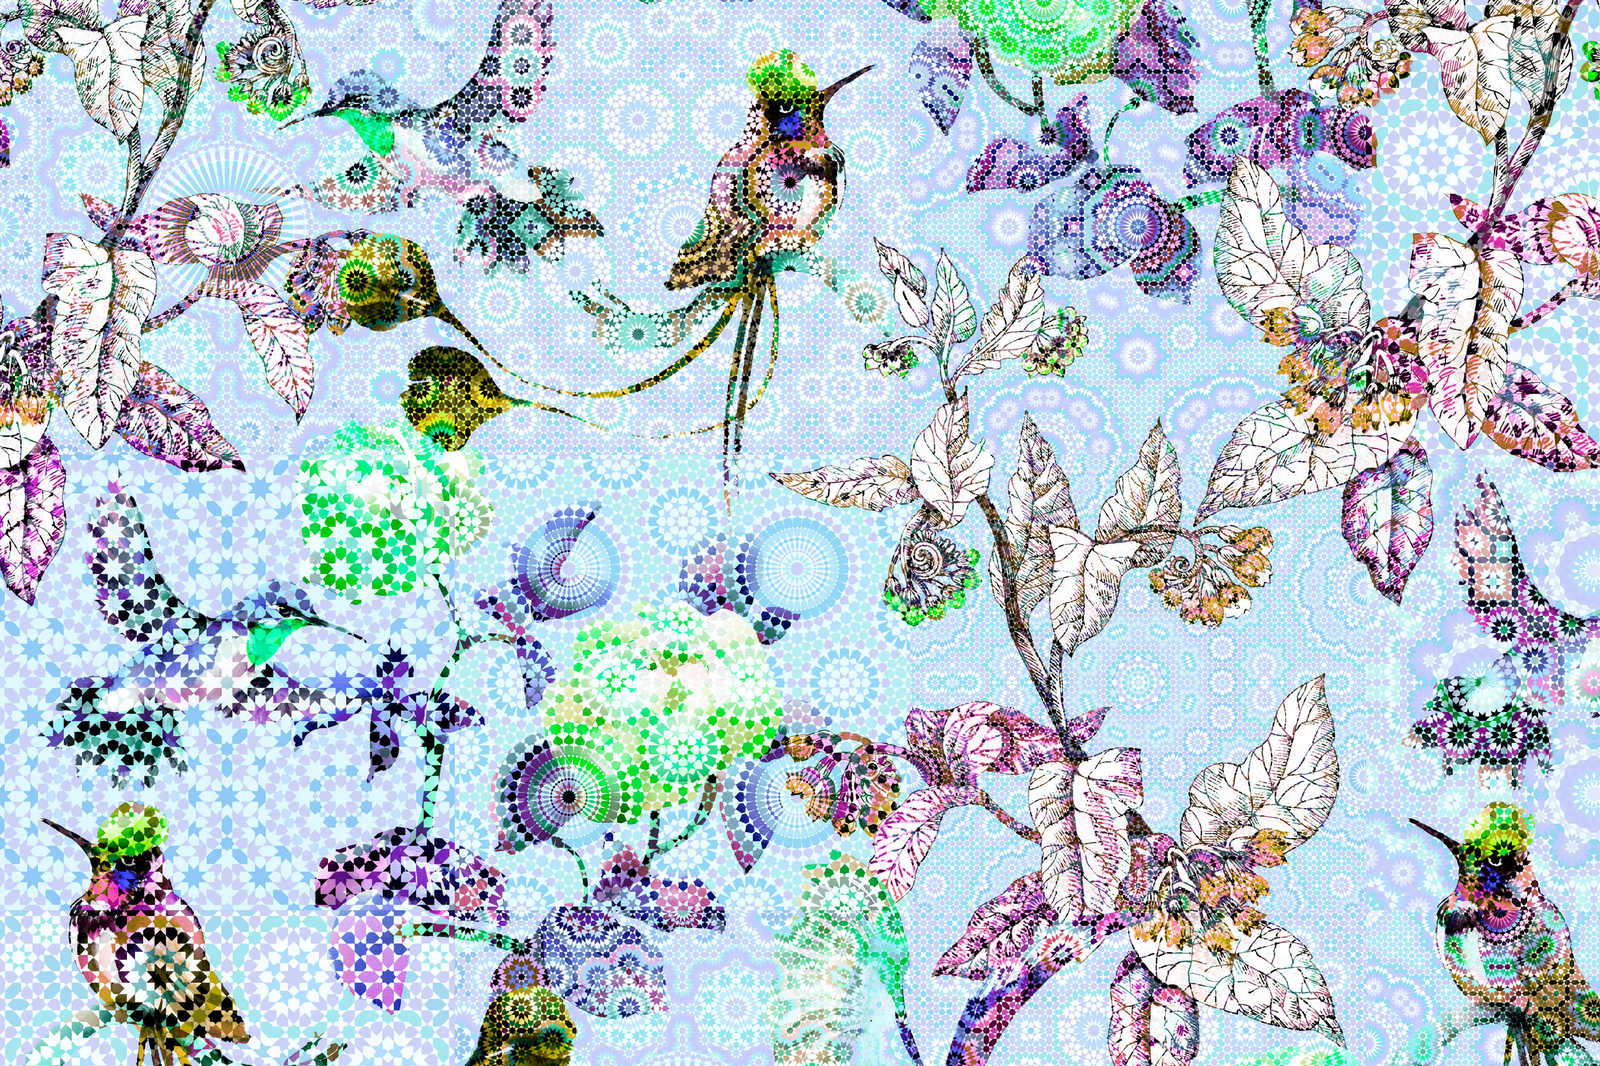             Quadro su tela Fiori e uccelli in stile mosaico - 0,90 m x 0,60 m
        